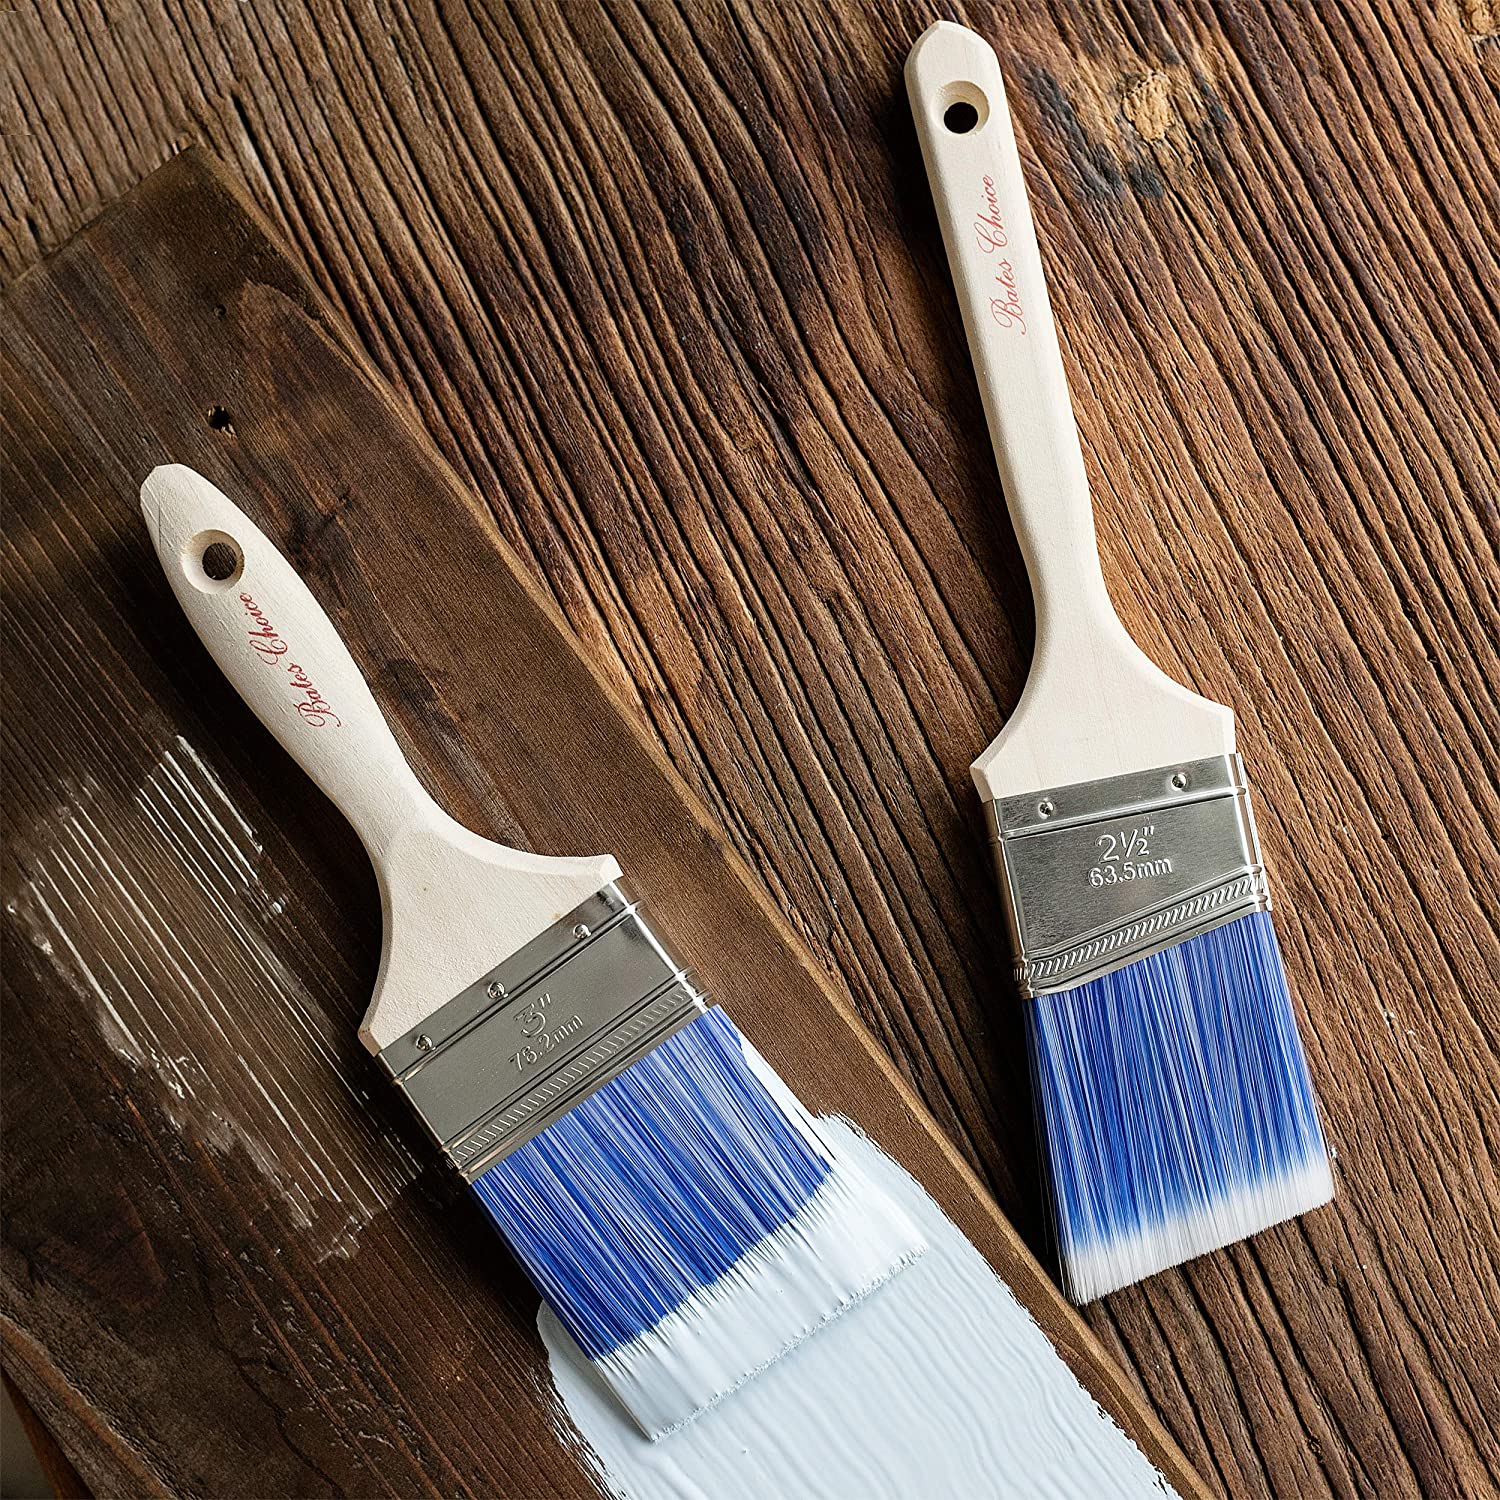 Bates Paint Brushes - 4 Pack, Treated Wood Handle, Paint Brush